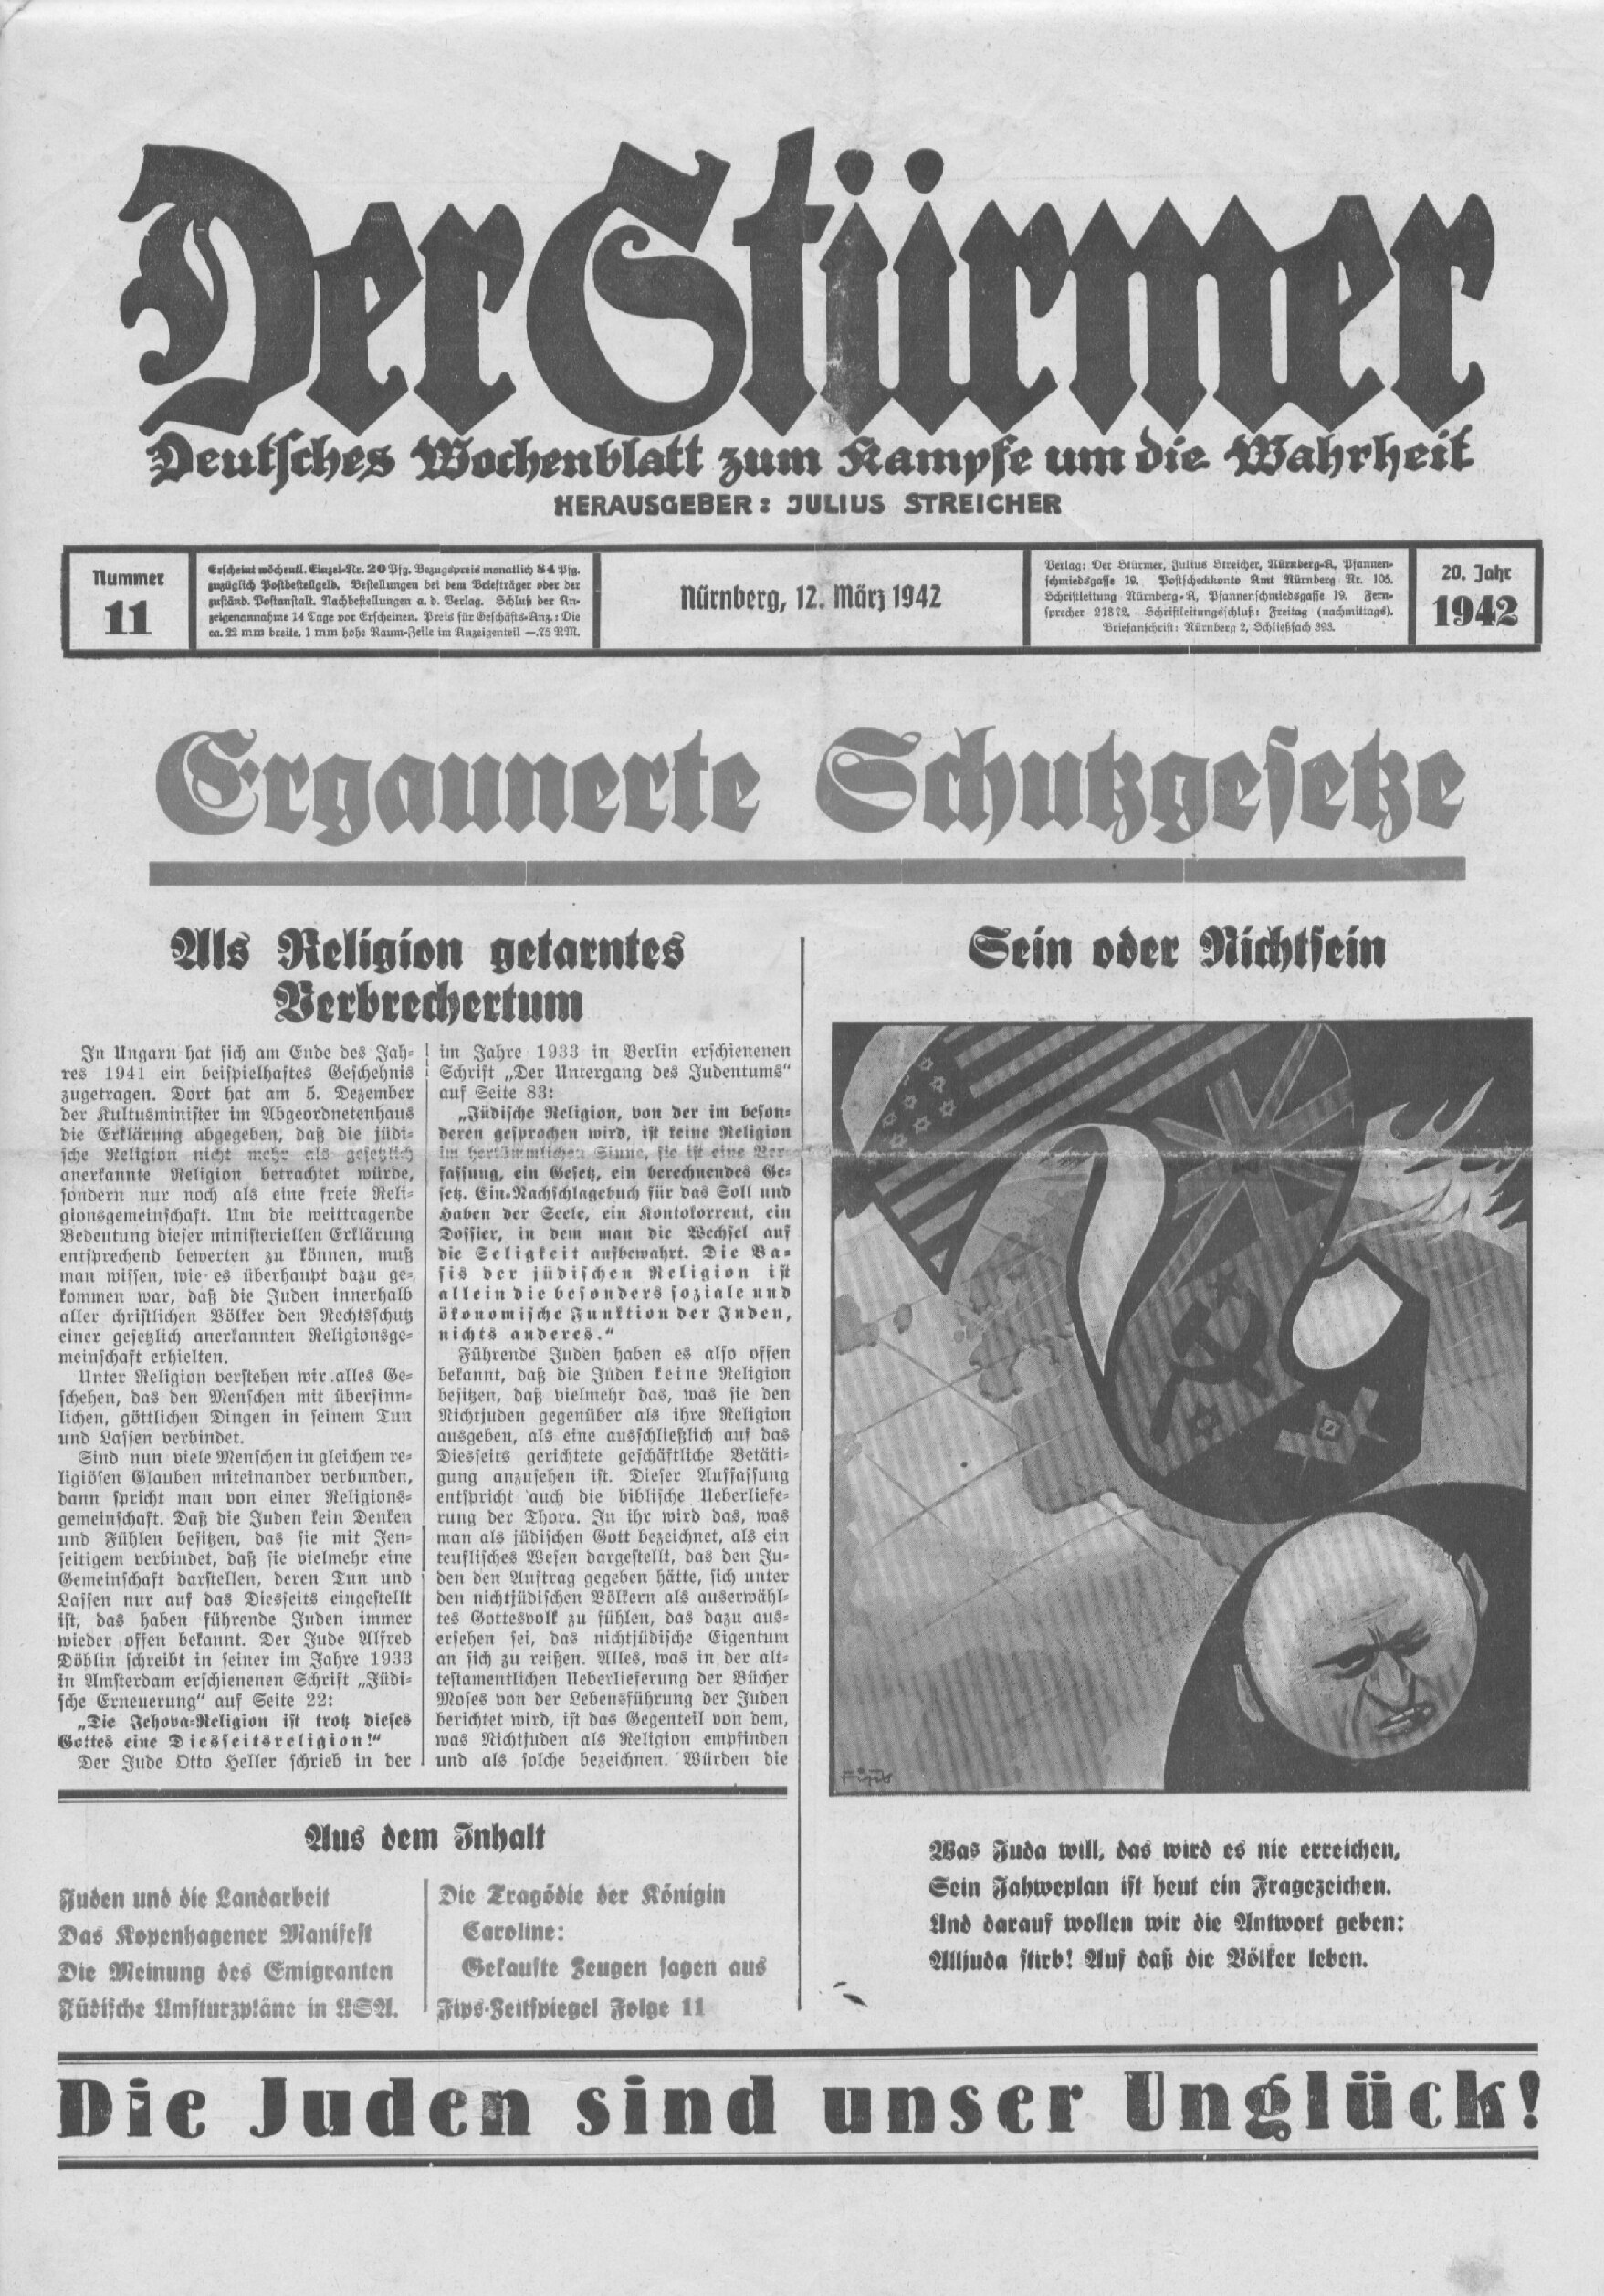 Der Stürmer - 1942 Nr. 11 - Ergaunerte Schutzgesetze